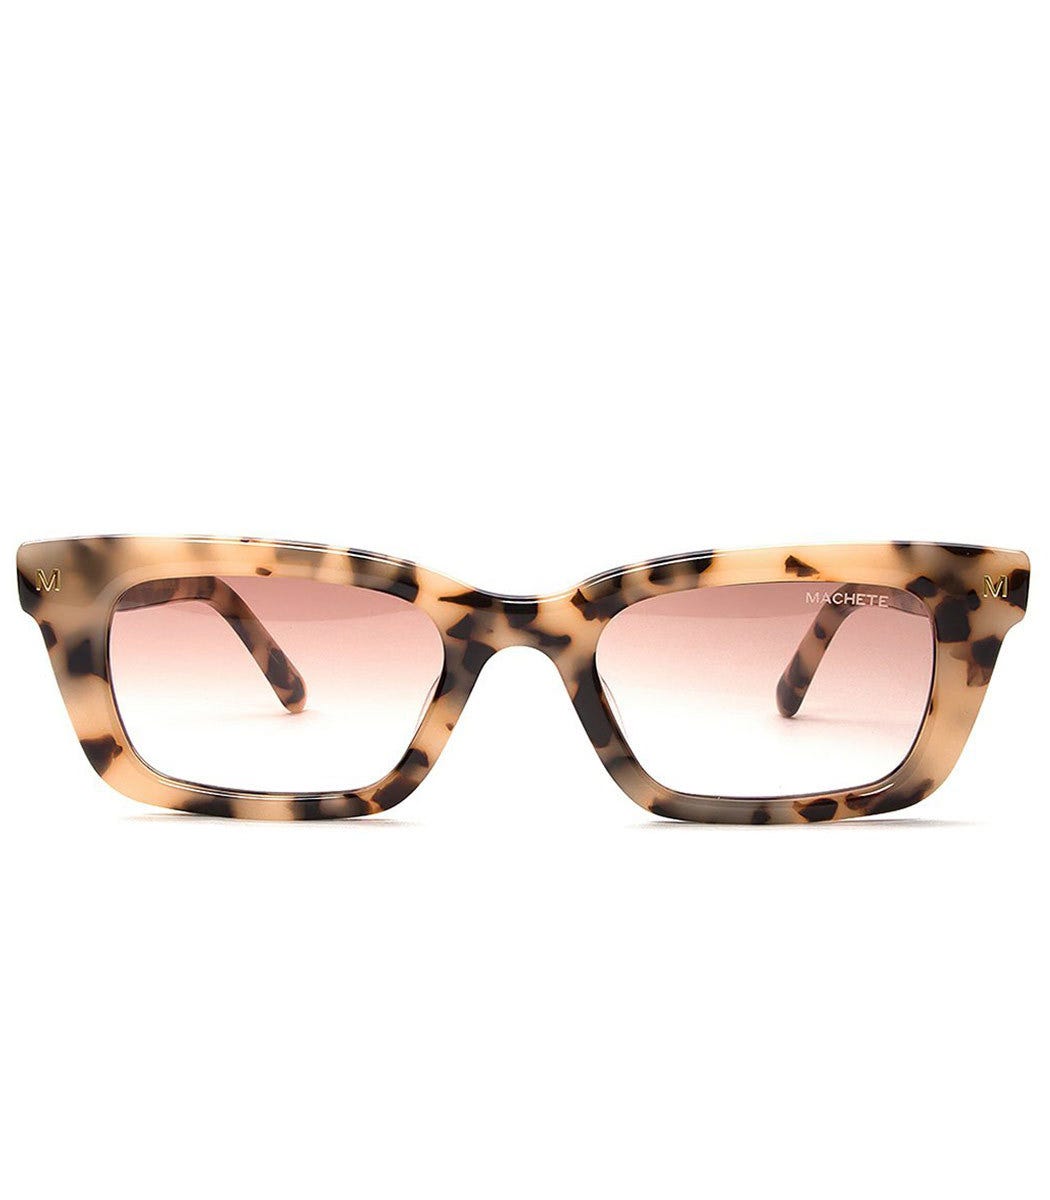 Best New Sunglasses Brands Of 21 Best Designer Sunglasses For Women